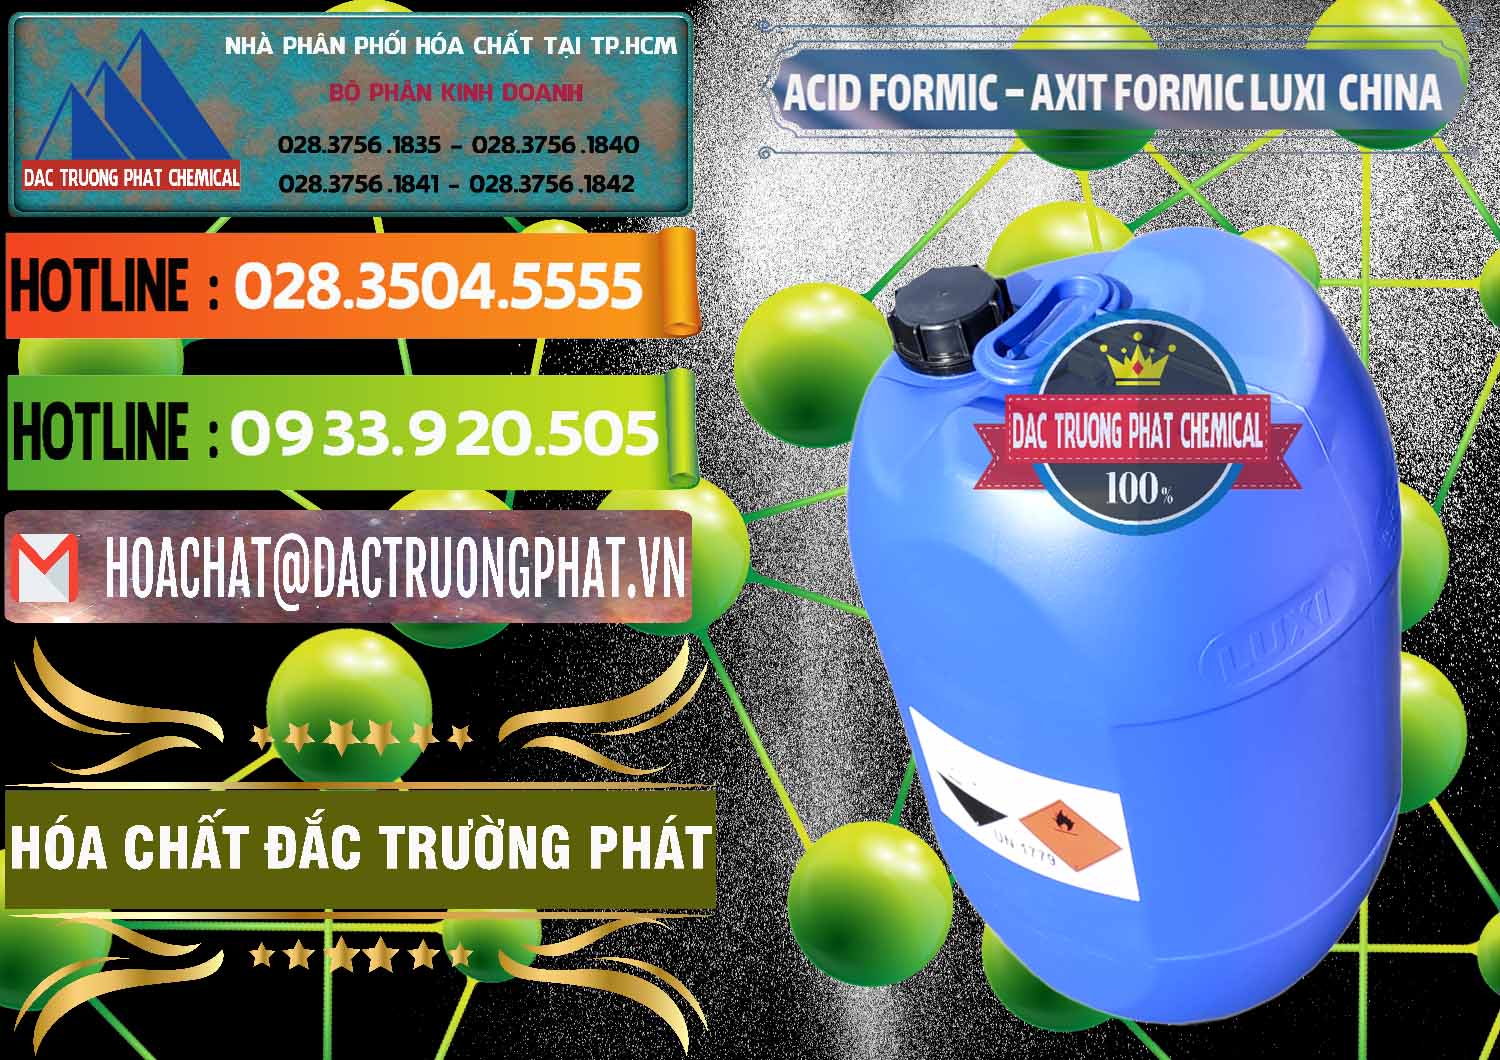 Nhà nhập khẩu - bán Acid Formic - Axit Formic Luxi Trung Quốc China - 0029 - Công ty chuyên nhập khẩu và phân phối hóa chất tại TP.HCM - cungcaphoachat.com.vn